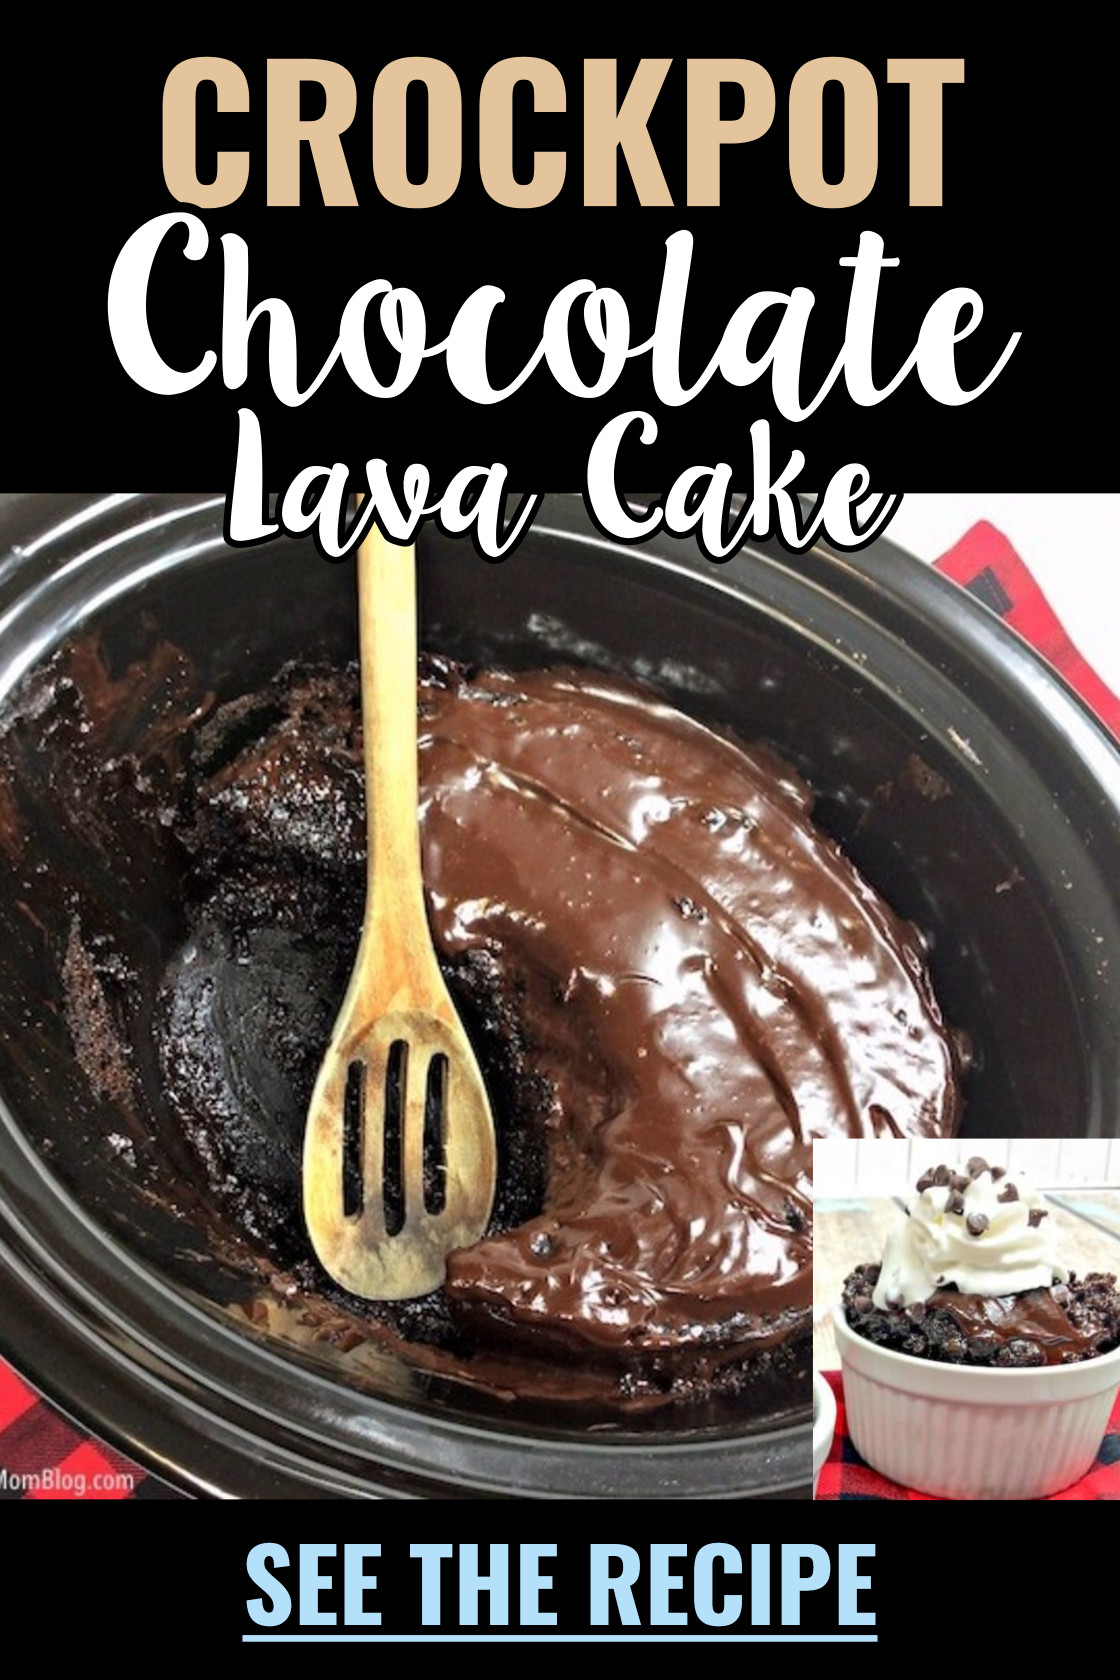 crockpot chocolate lava cake recipe